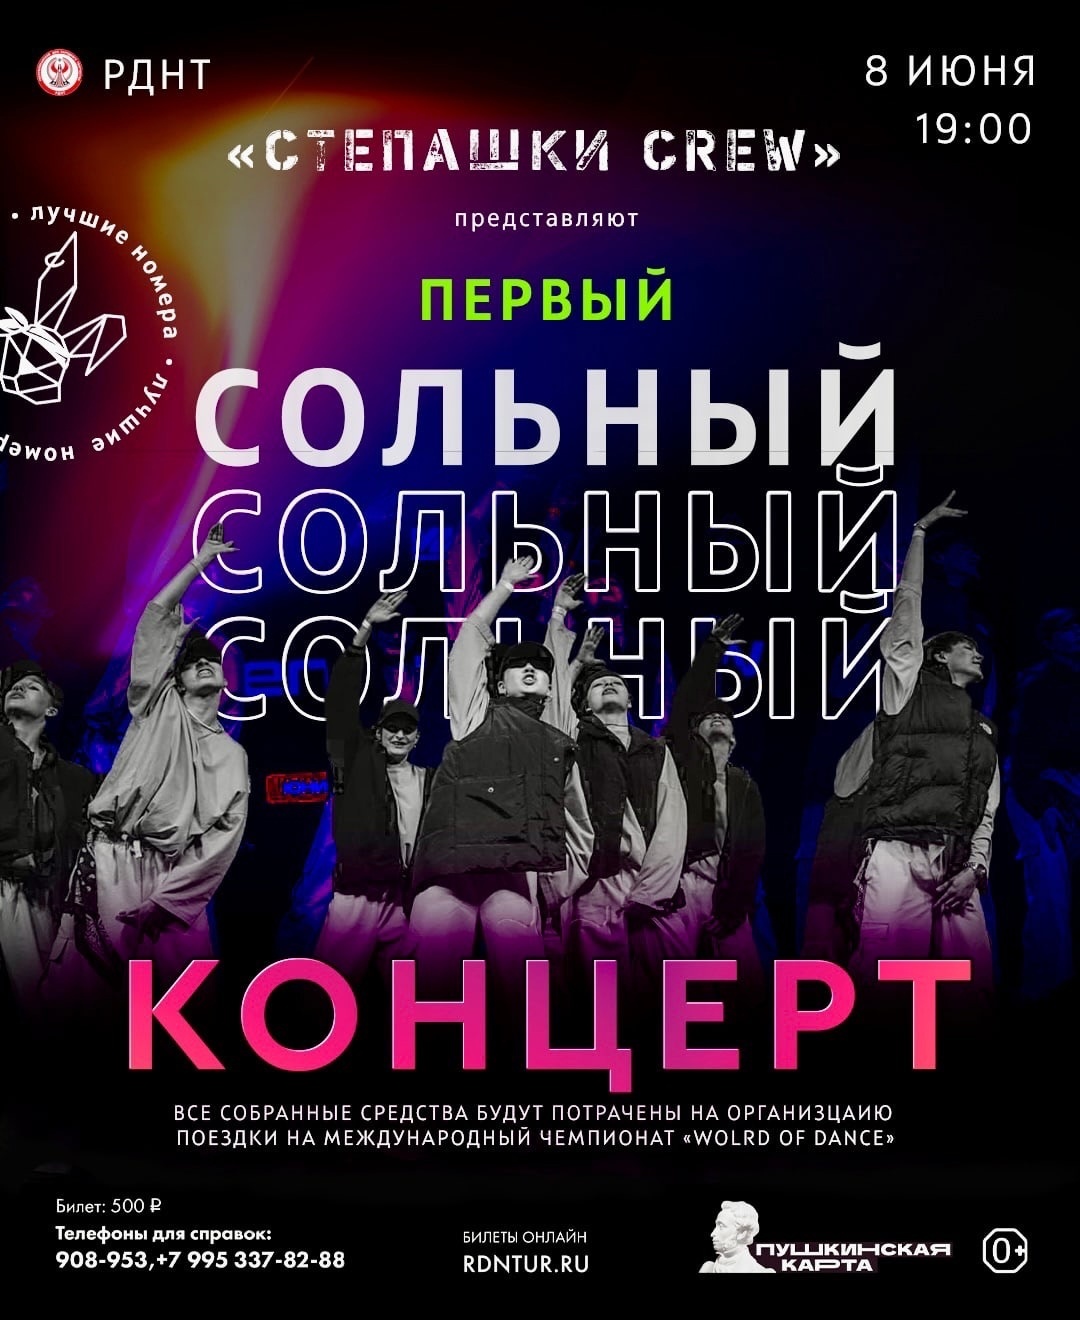 Афиша Ижевска — Концерт команды «Степашки crew»